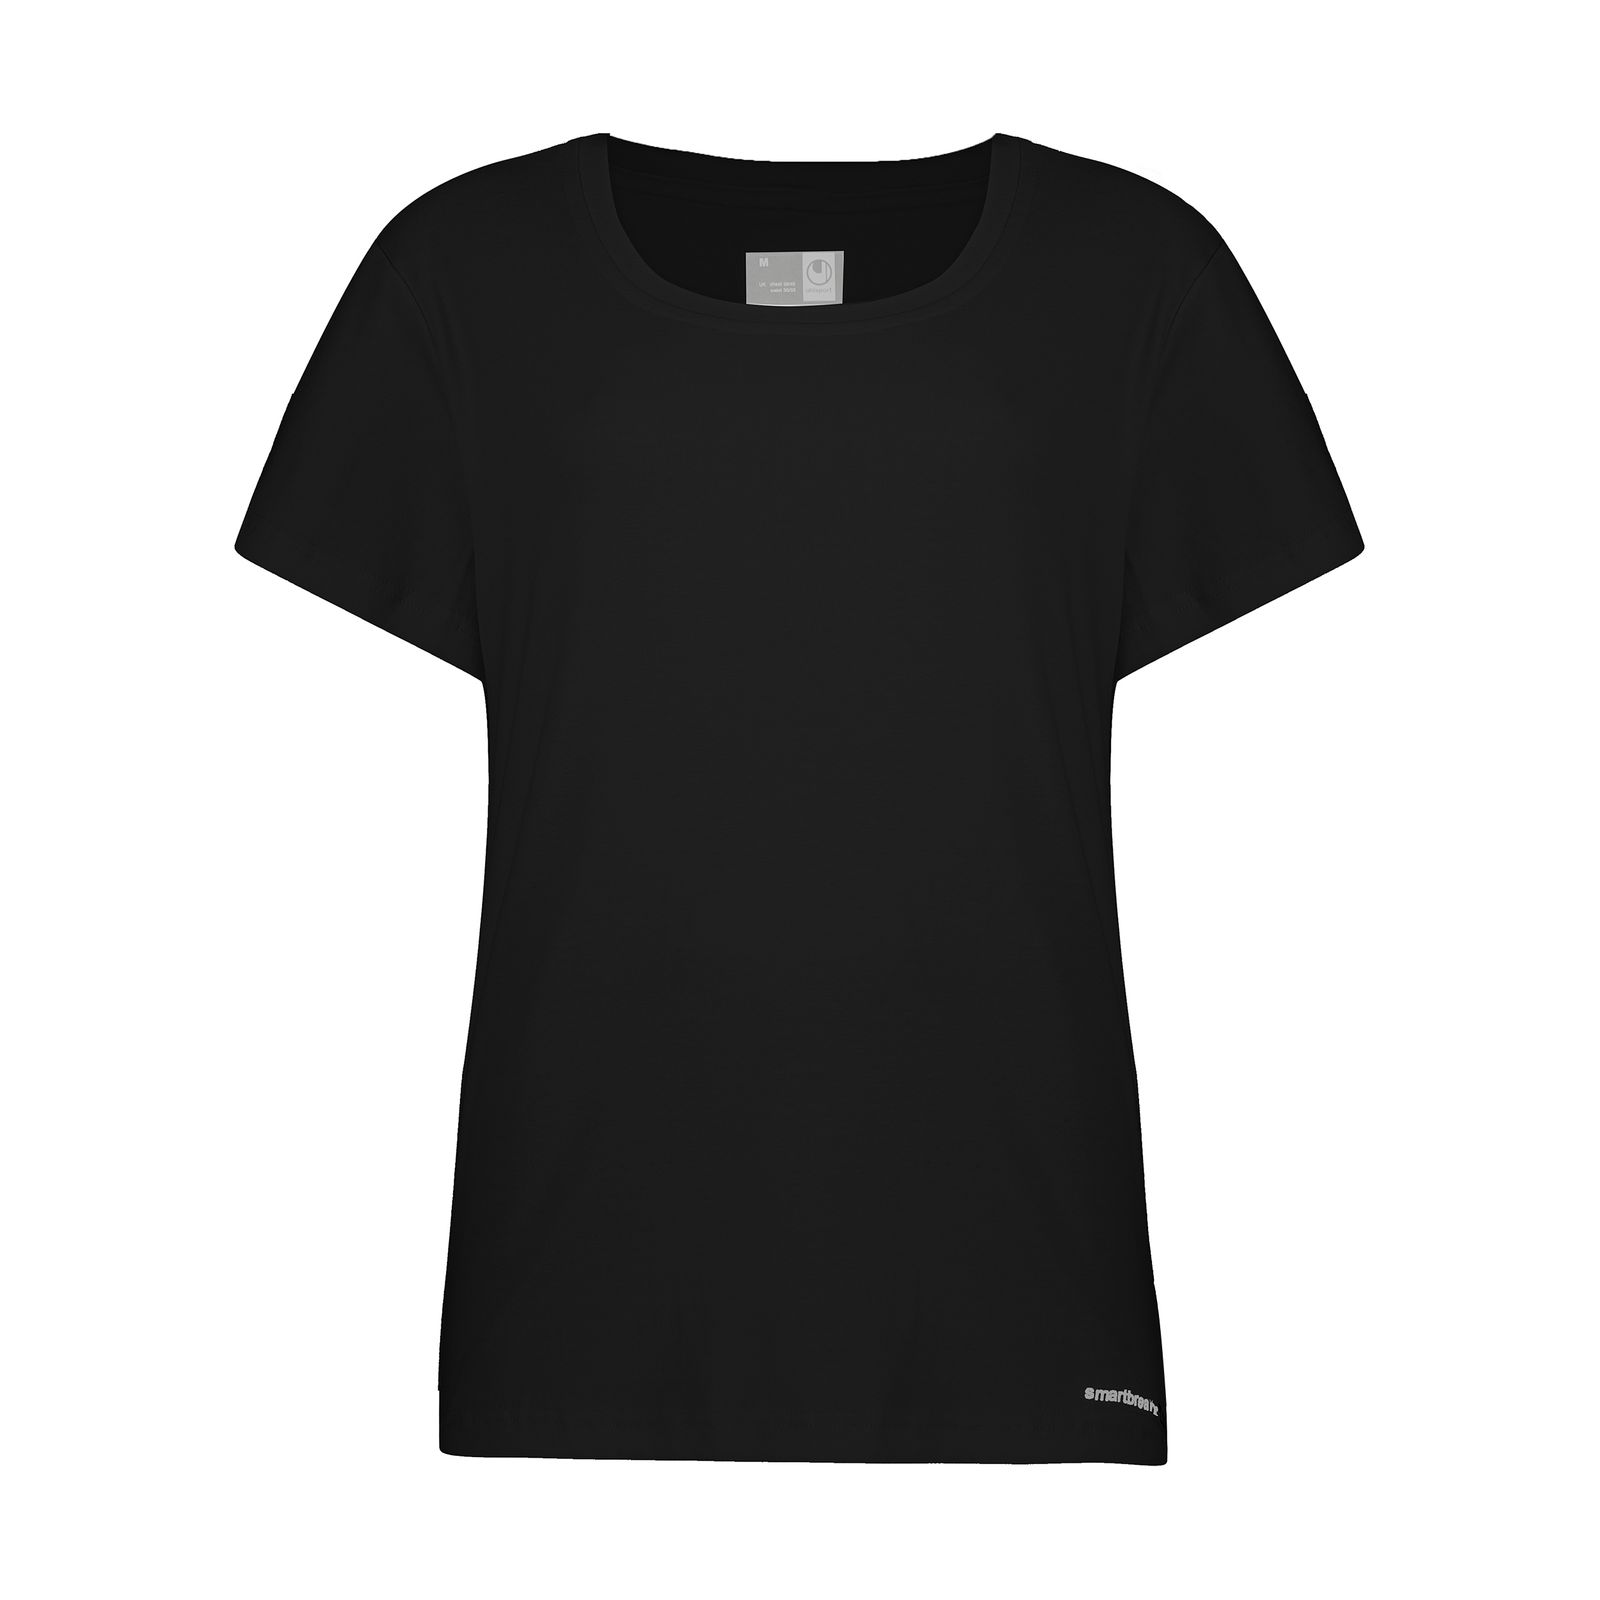 تی شرت ورزشی زنانه آلشپرت مدل WUH666-001 -  - 1